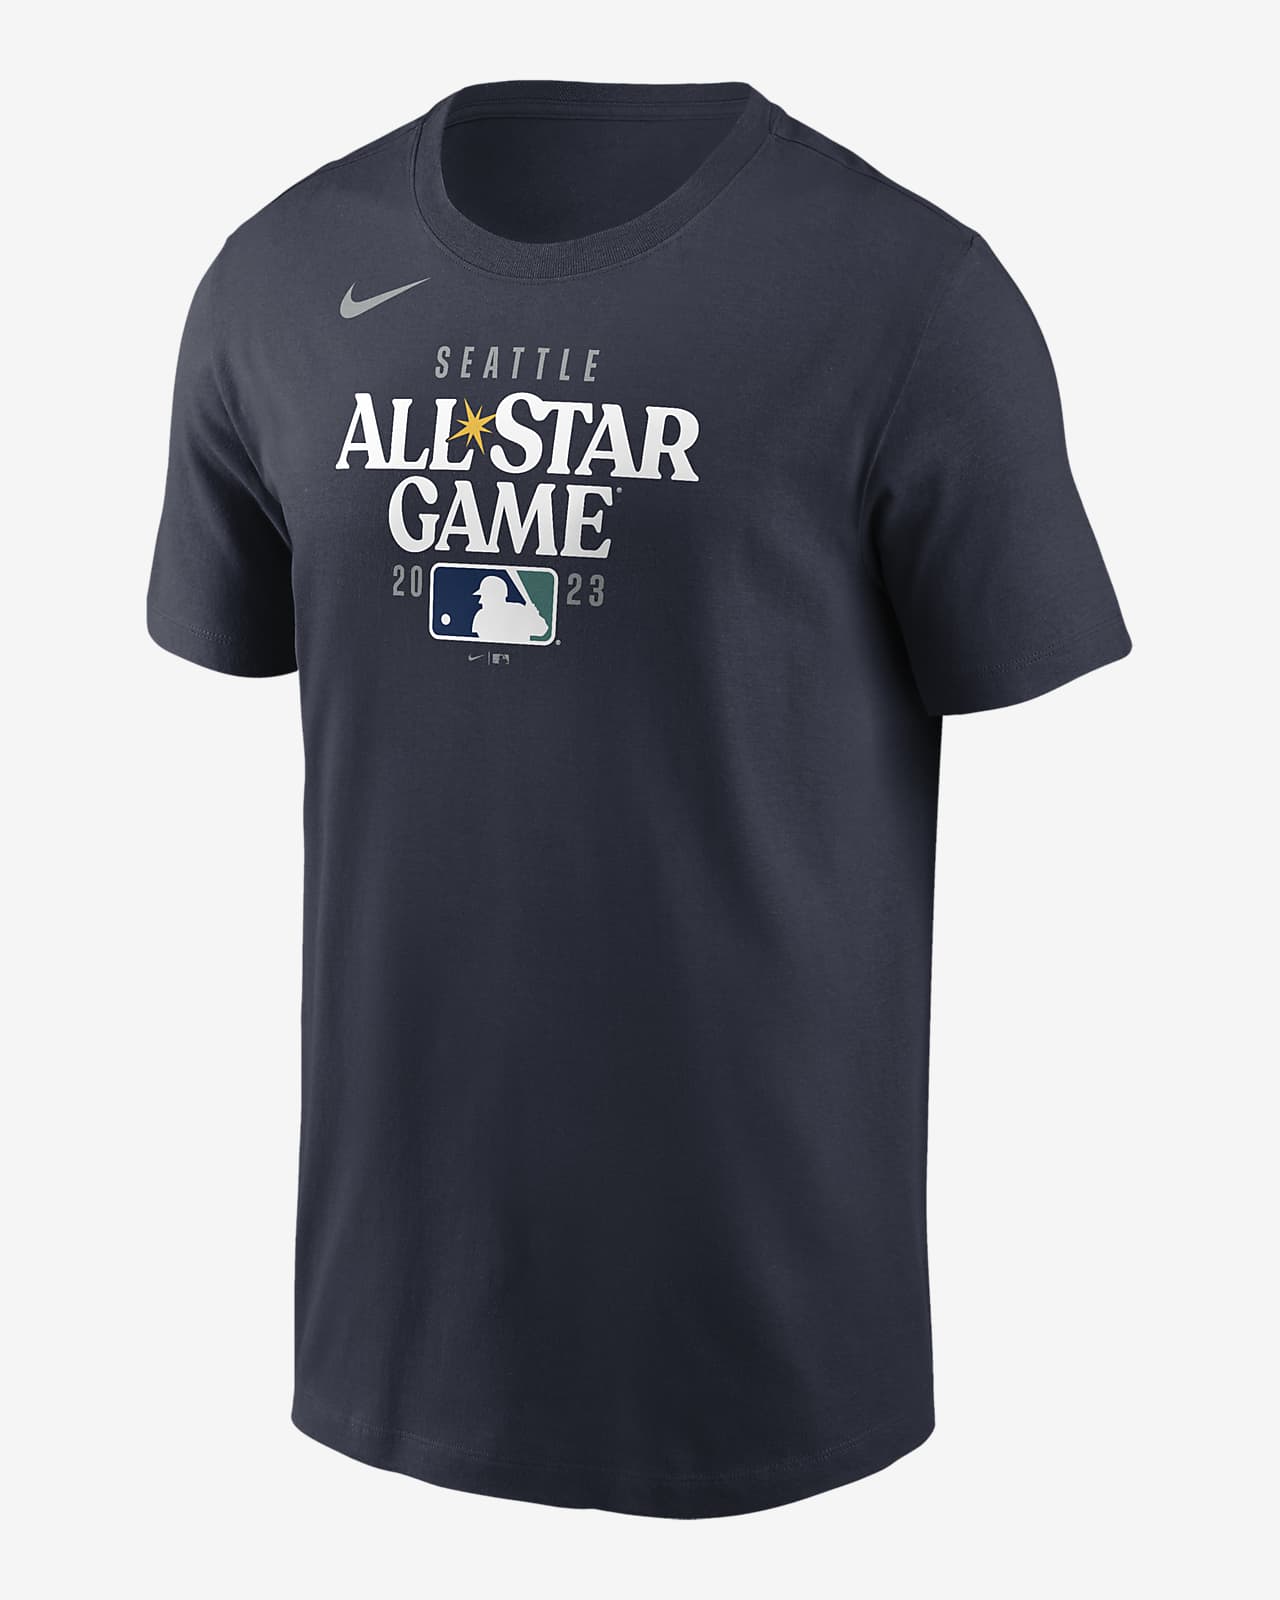 2023 All-Star Game Wordmark Men's Nike MLB T-Shirt.